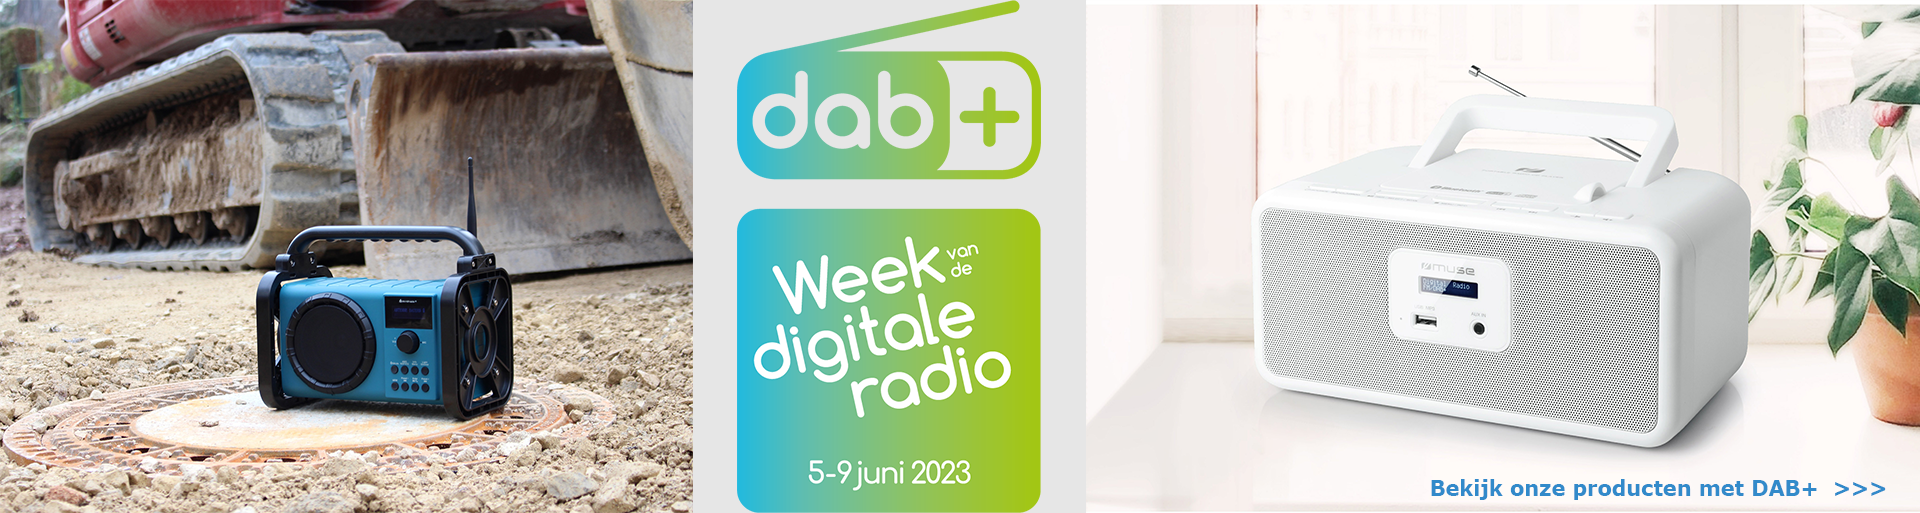 Week van de digitale radio - DAB+